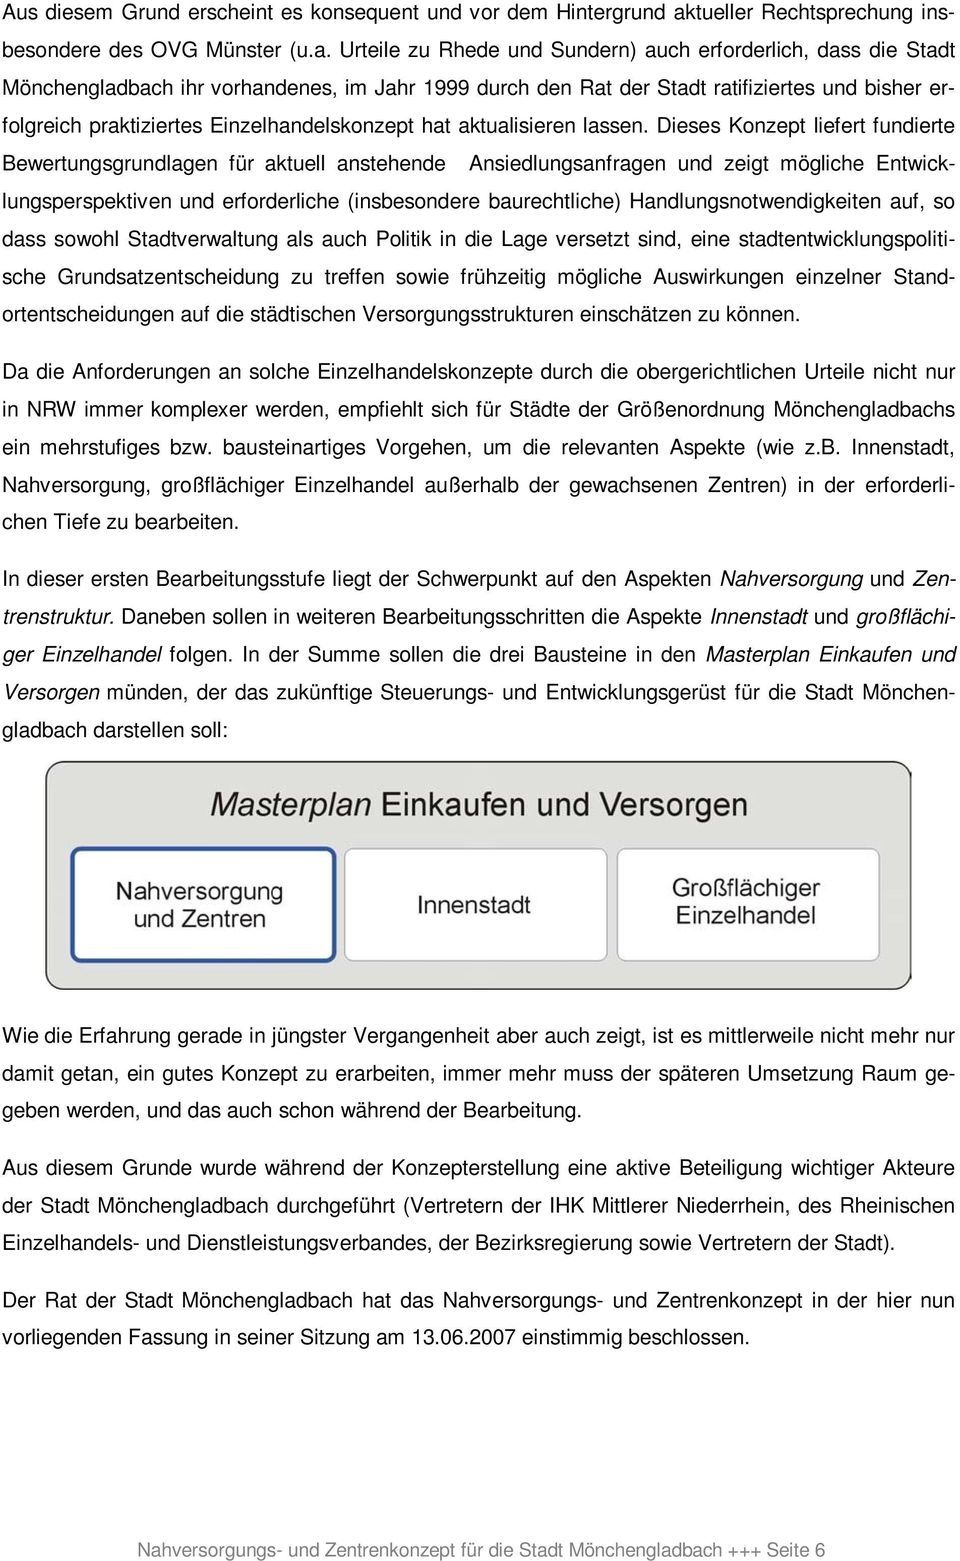 Urteile zu Rhede und Sundern) auch erforderlich, dass die Stadt Mönchengladbach ihr vorhandenes, im Jahr 1999 durch den Rat der Stadt ratifiziertes und bisher erfolgreich praktiziertes